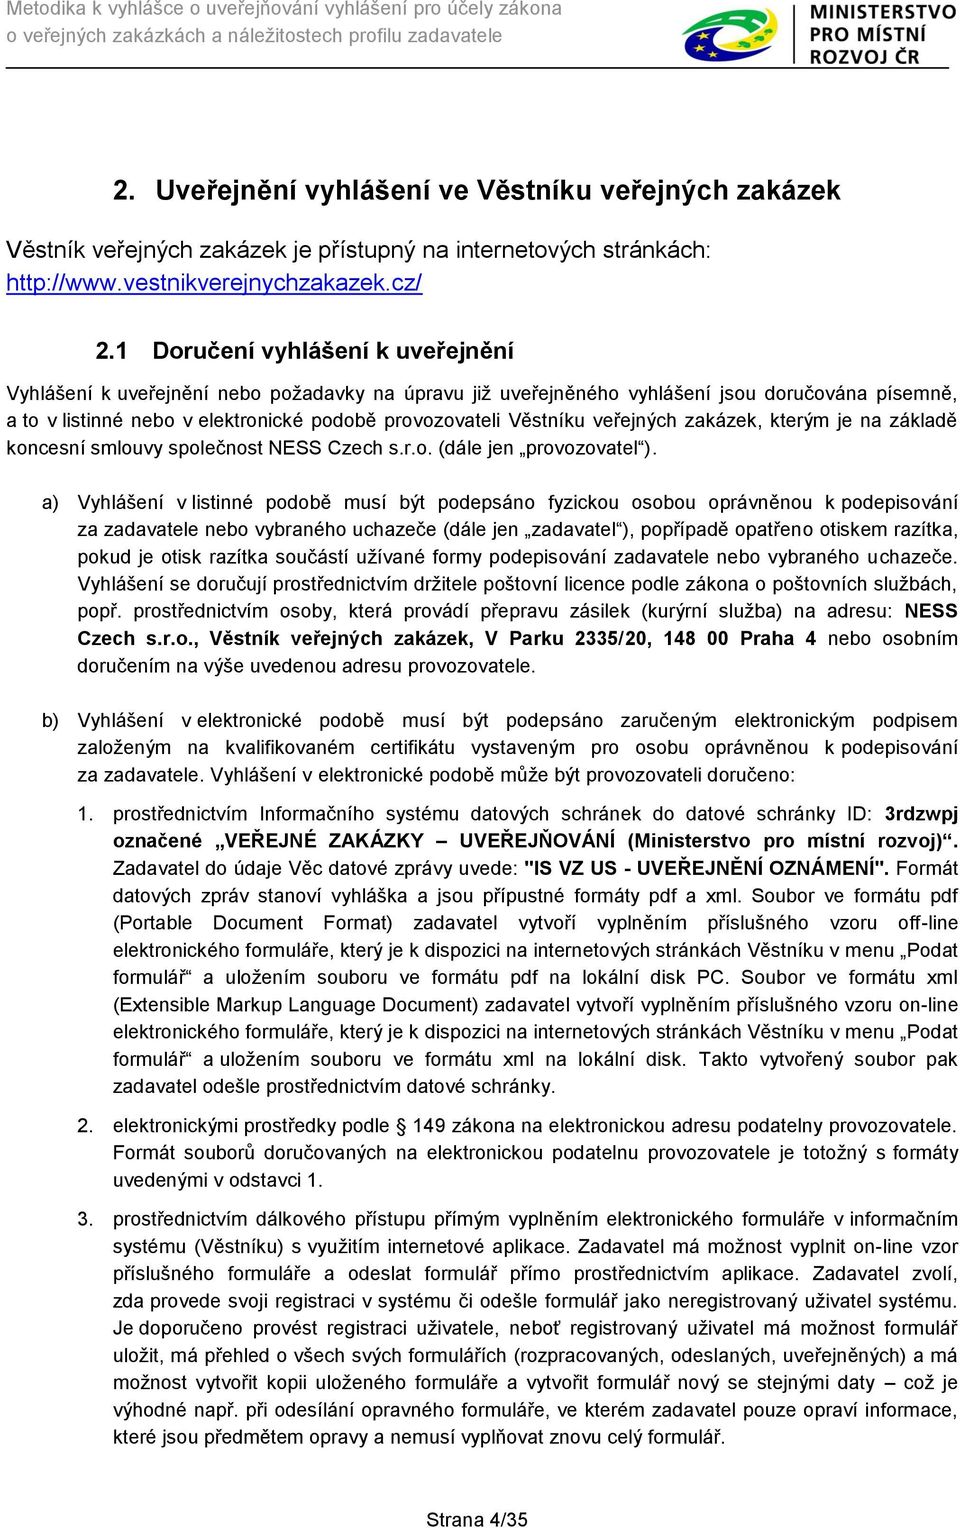 veřejných zakázek, kterým je na základě koncesní smlouvy společnost NESS Czech s.r.o. (dále jen provozovatel ).